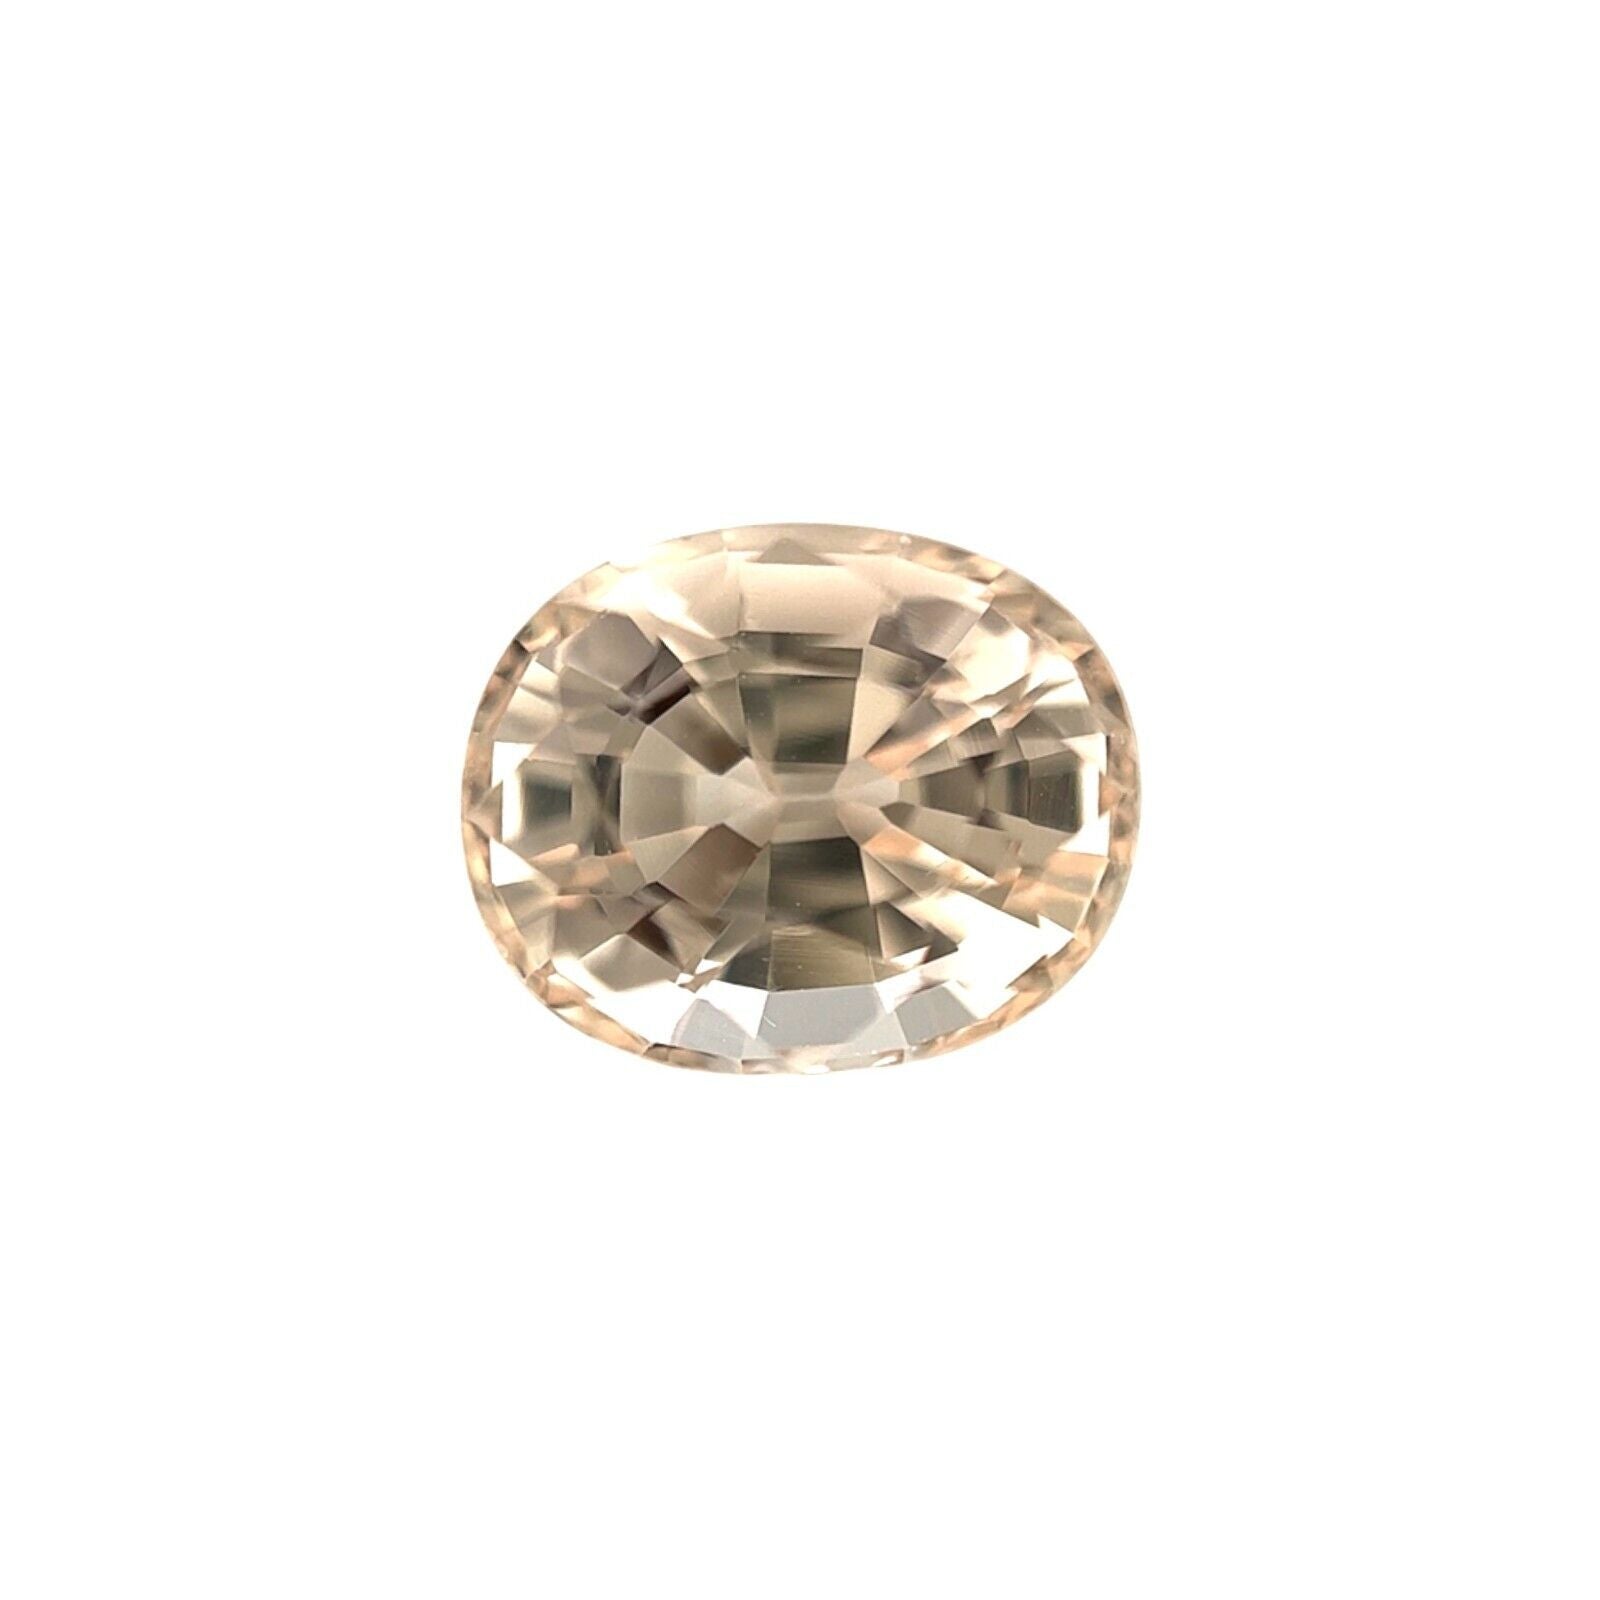 Morganite naturelle fine de 2,45 carats, béryl orange pêche, rose, taille ovale 9 x 7,4 mm, pierre précieuse VVS